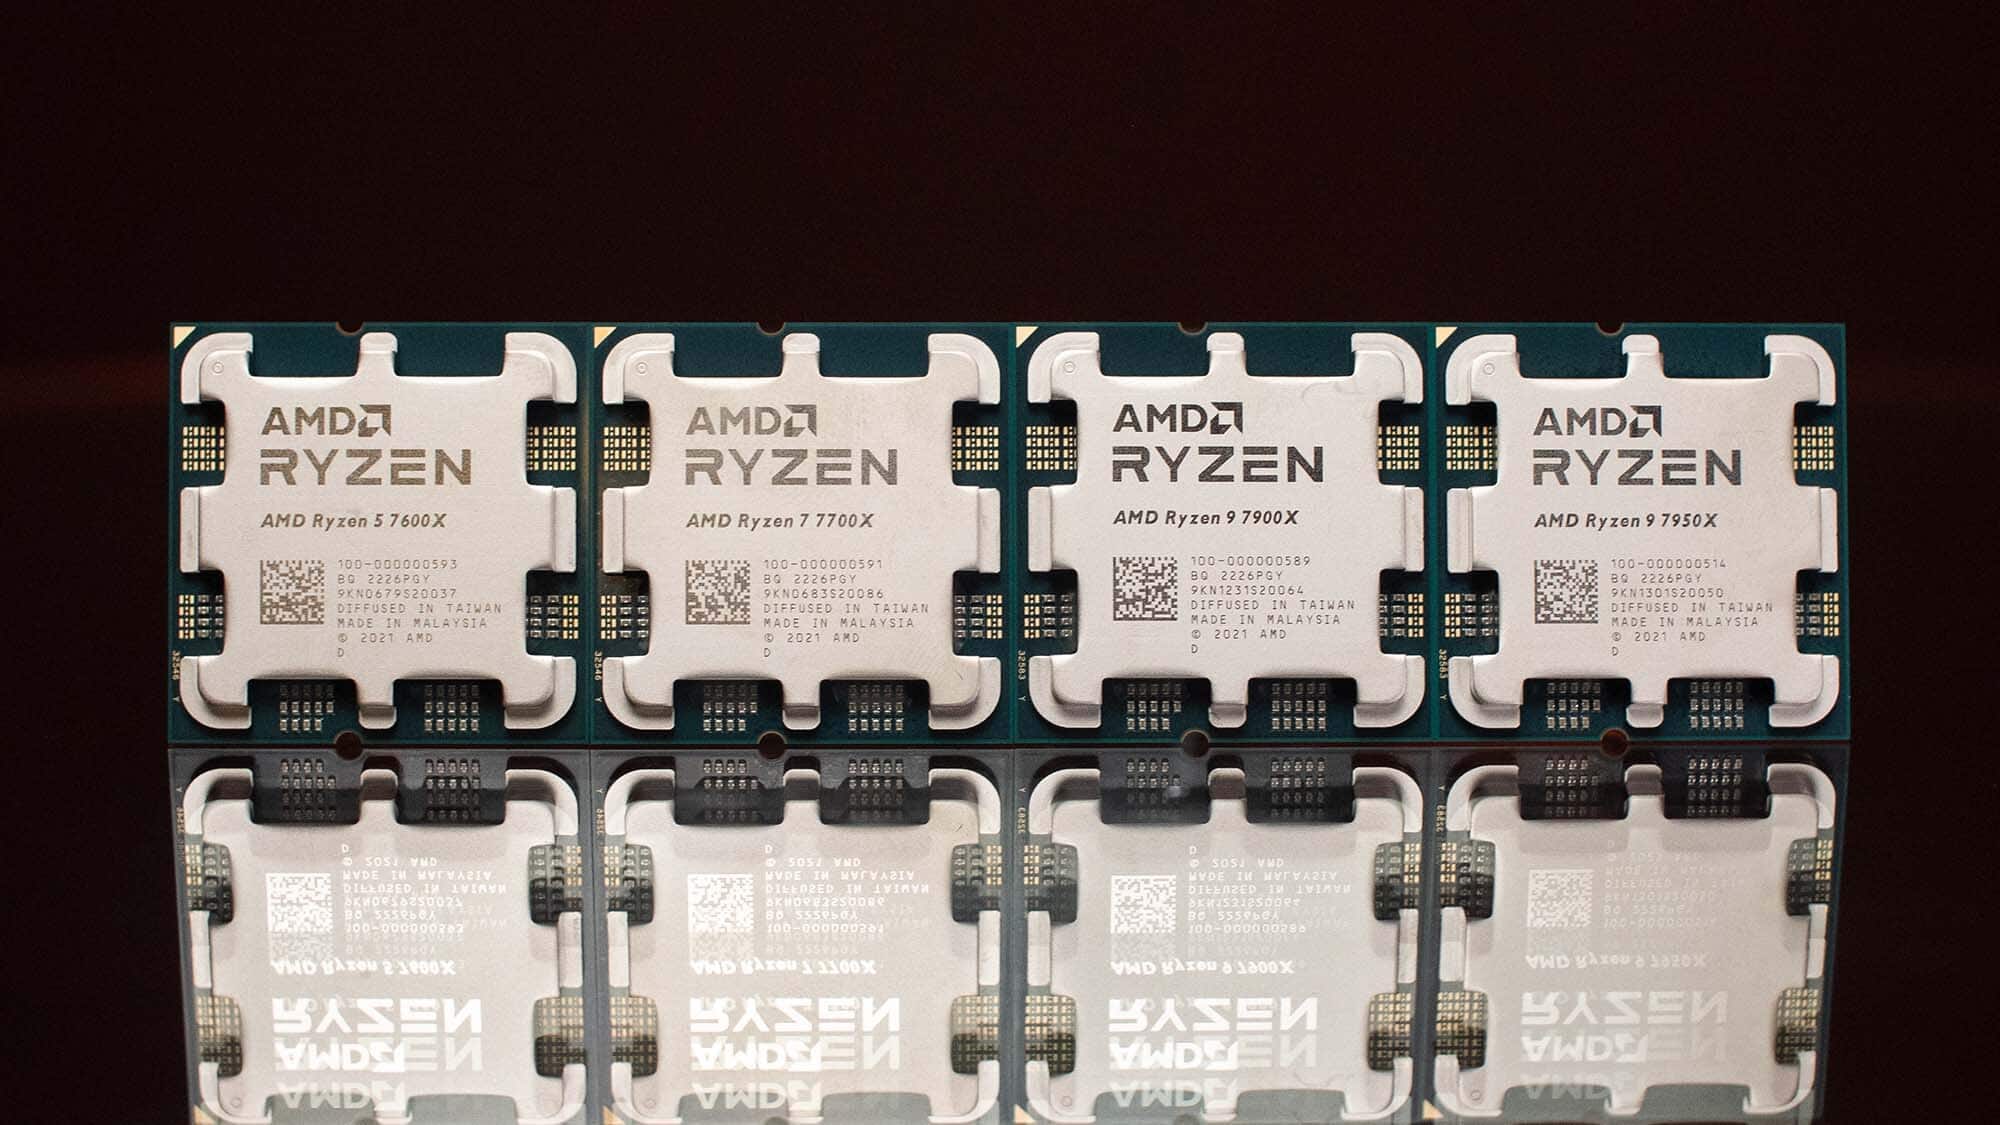 Cette astuce de refroidissement du CPU AMD Ryzen 7000 est quelque chose que vous ne devriez vraiment pas essayer chez vous.